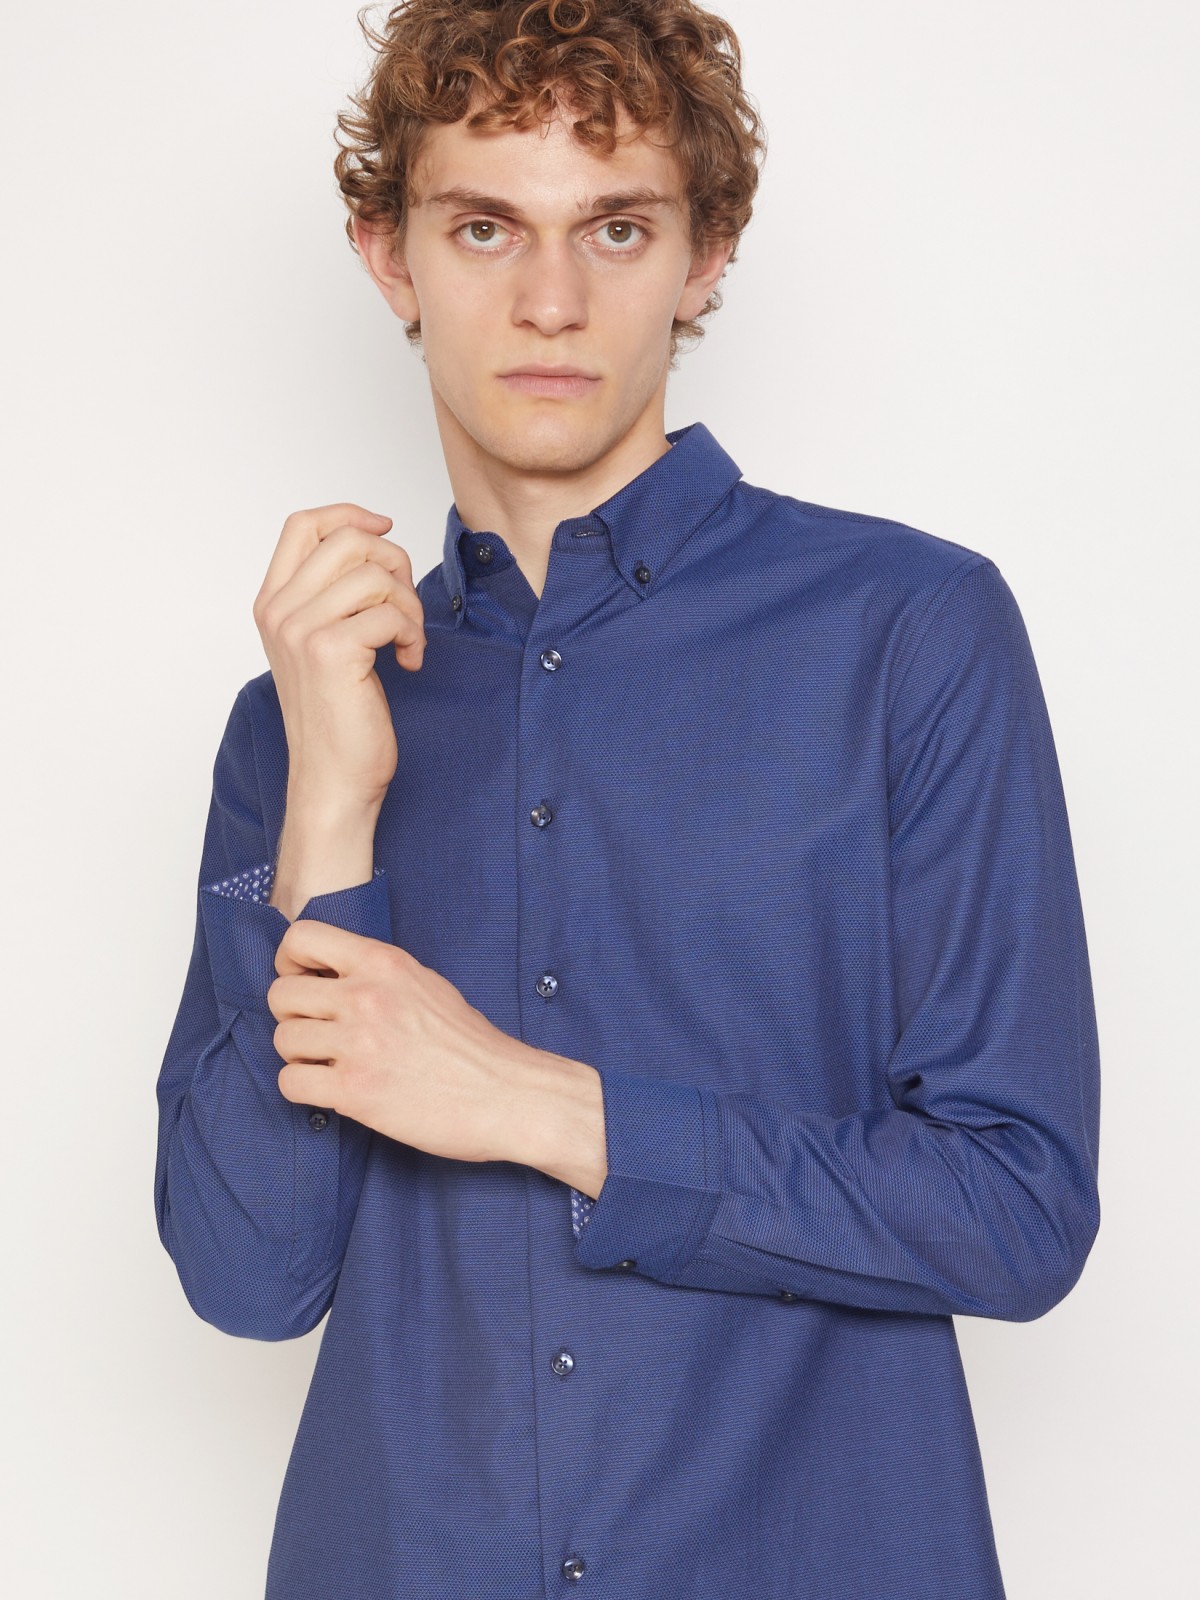 Рубашка приталенного силуэта zolla 011332159043, цвет темно-синий, размер S - фото 2